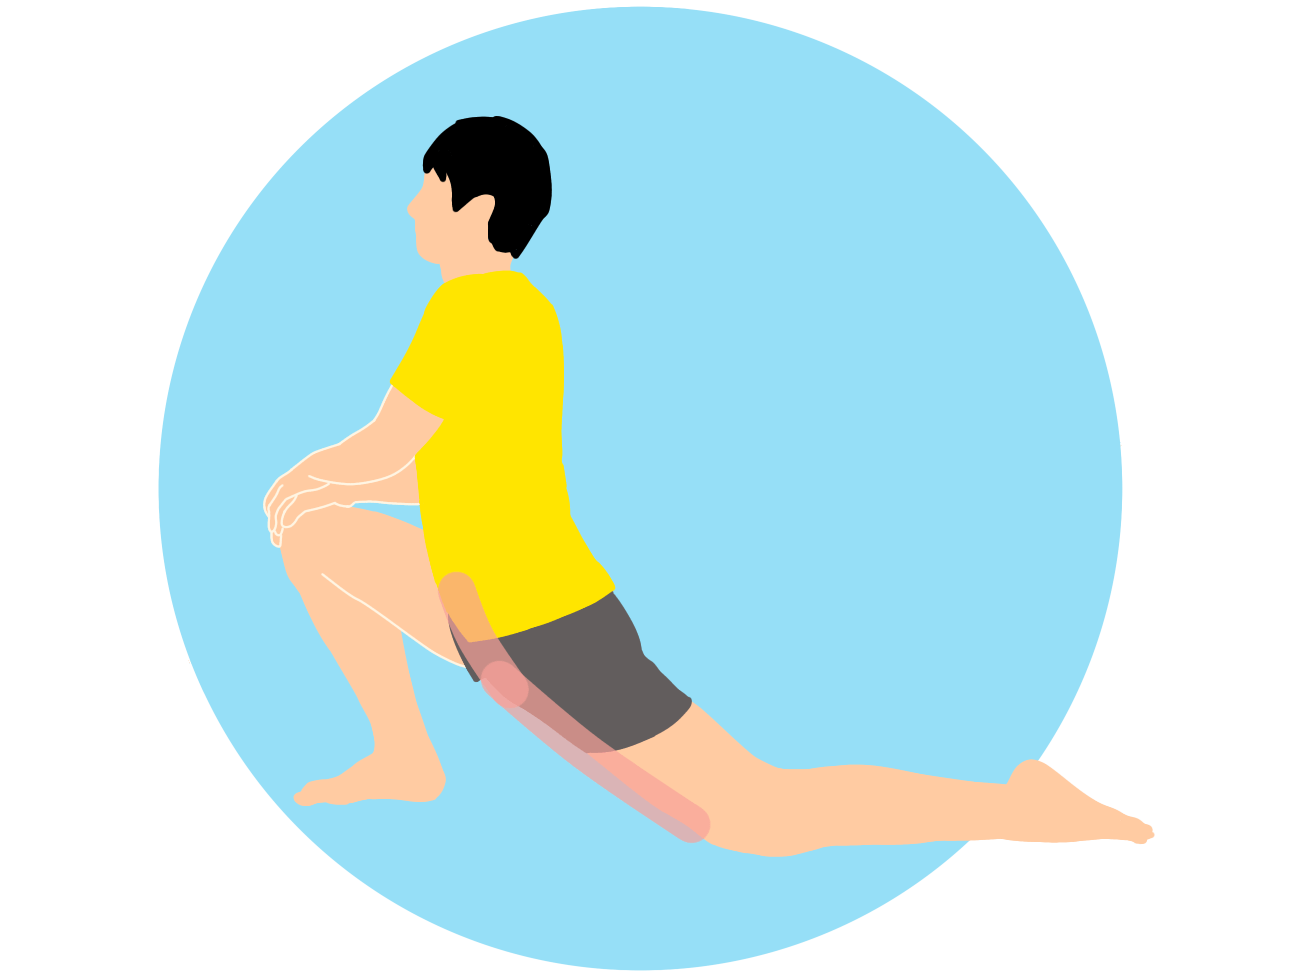 前後開脚 スピリッツ の動作を柔らかくしたい人にオススメの腸腰筋と大腿直筋のストレッチ